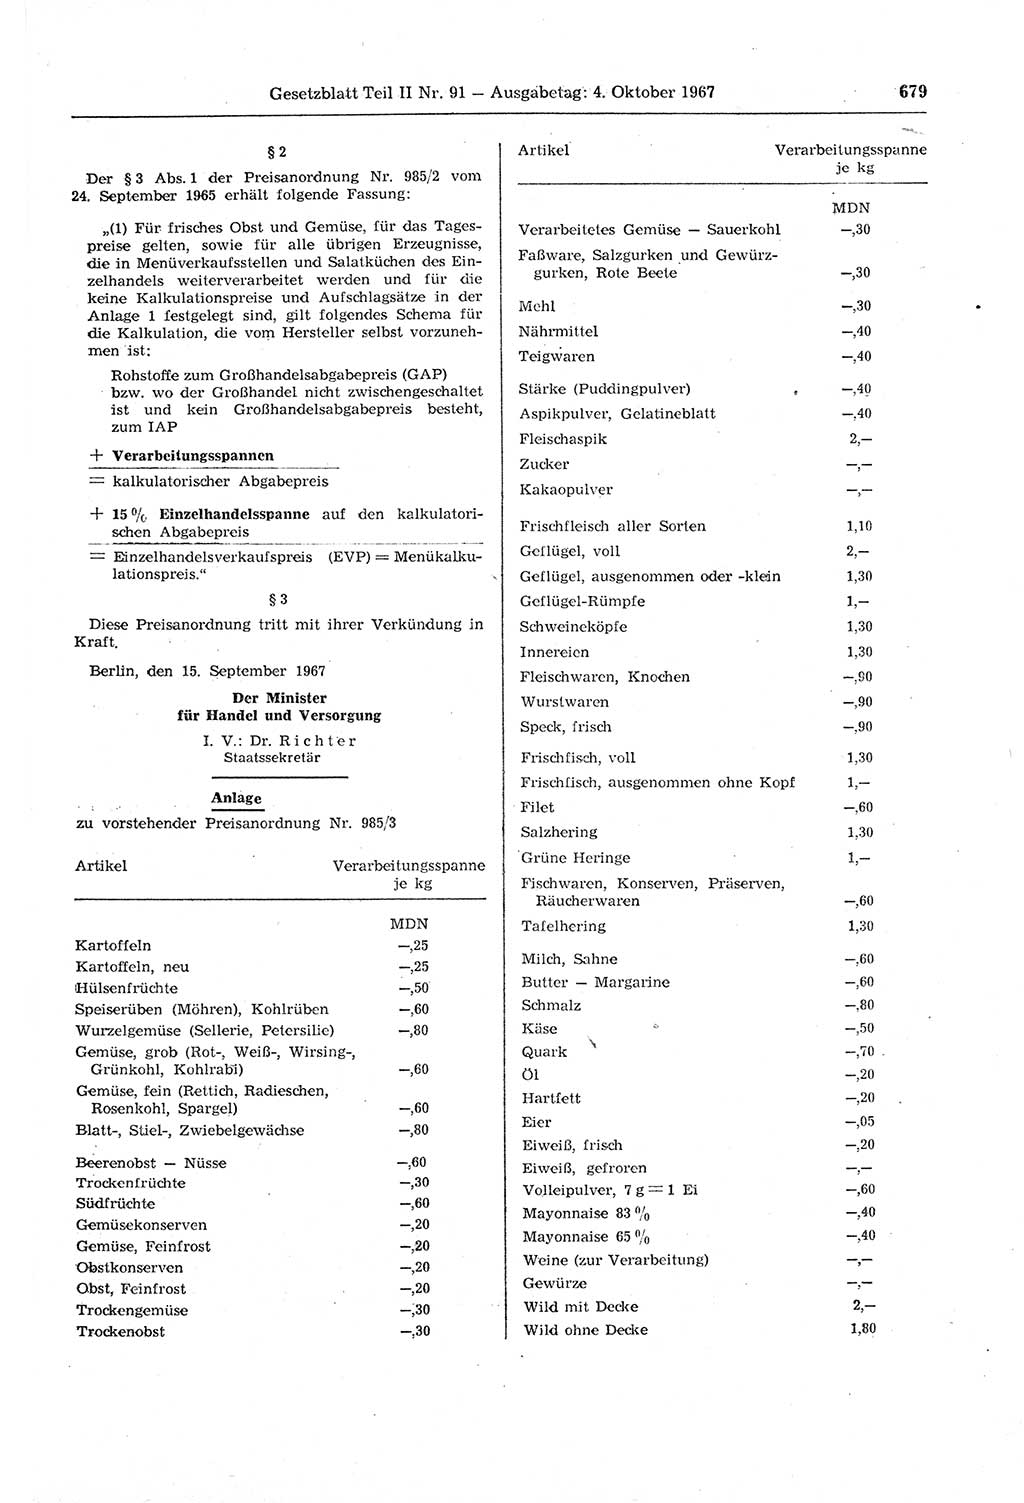 Gesetzblatt (GBl.) der Deutschen Demokratischen Republik (DDR) Teil ⅠⅠ 1967, Seite 679 (GBl. DDR ⅠⅠ 1967, S. 679)